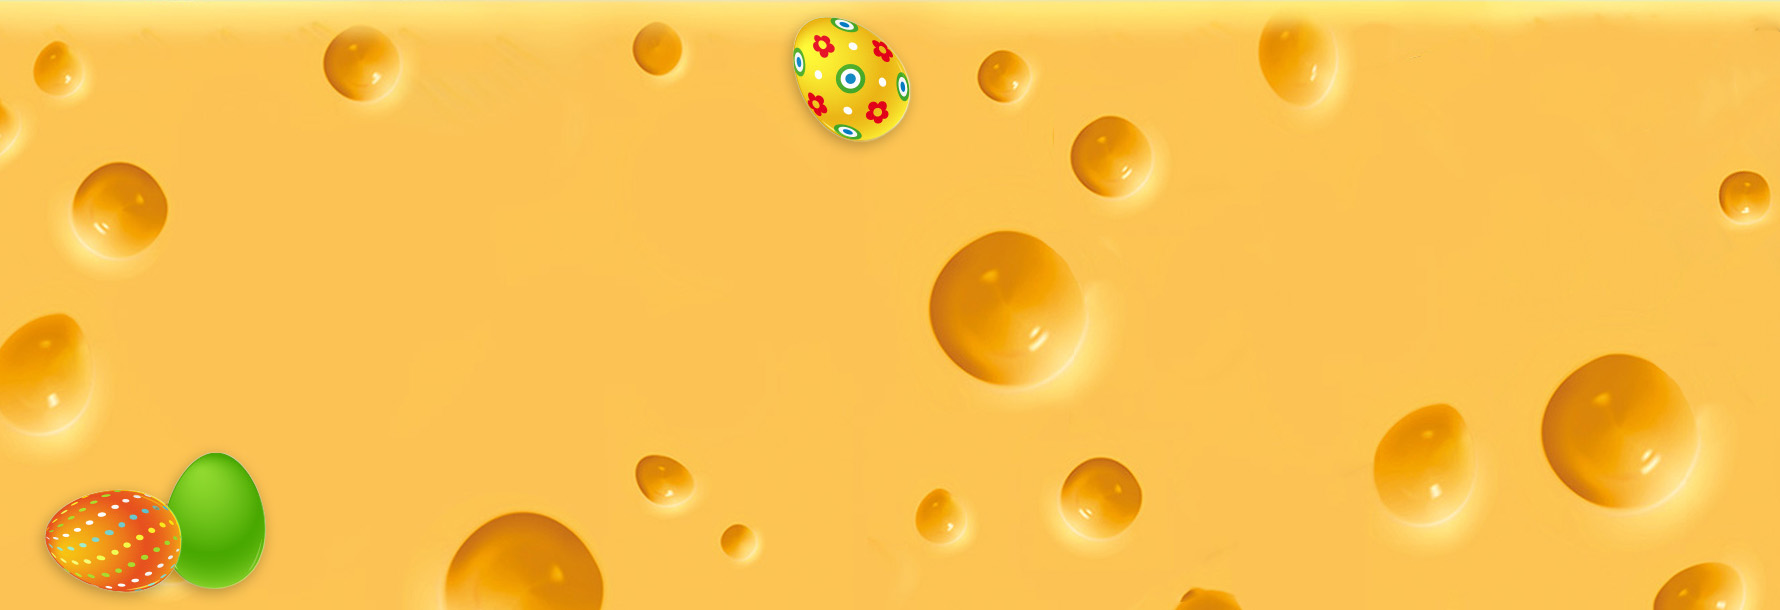 textura sýru